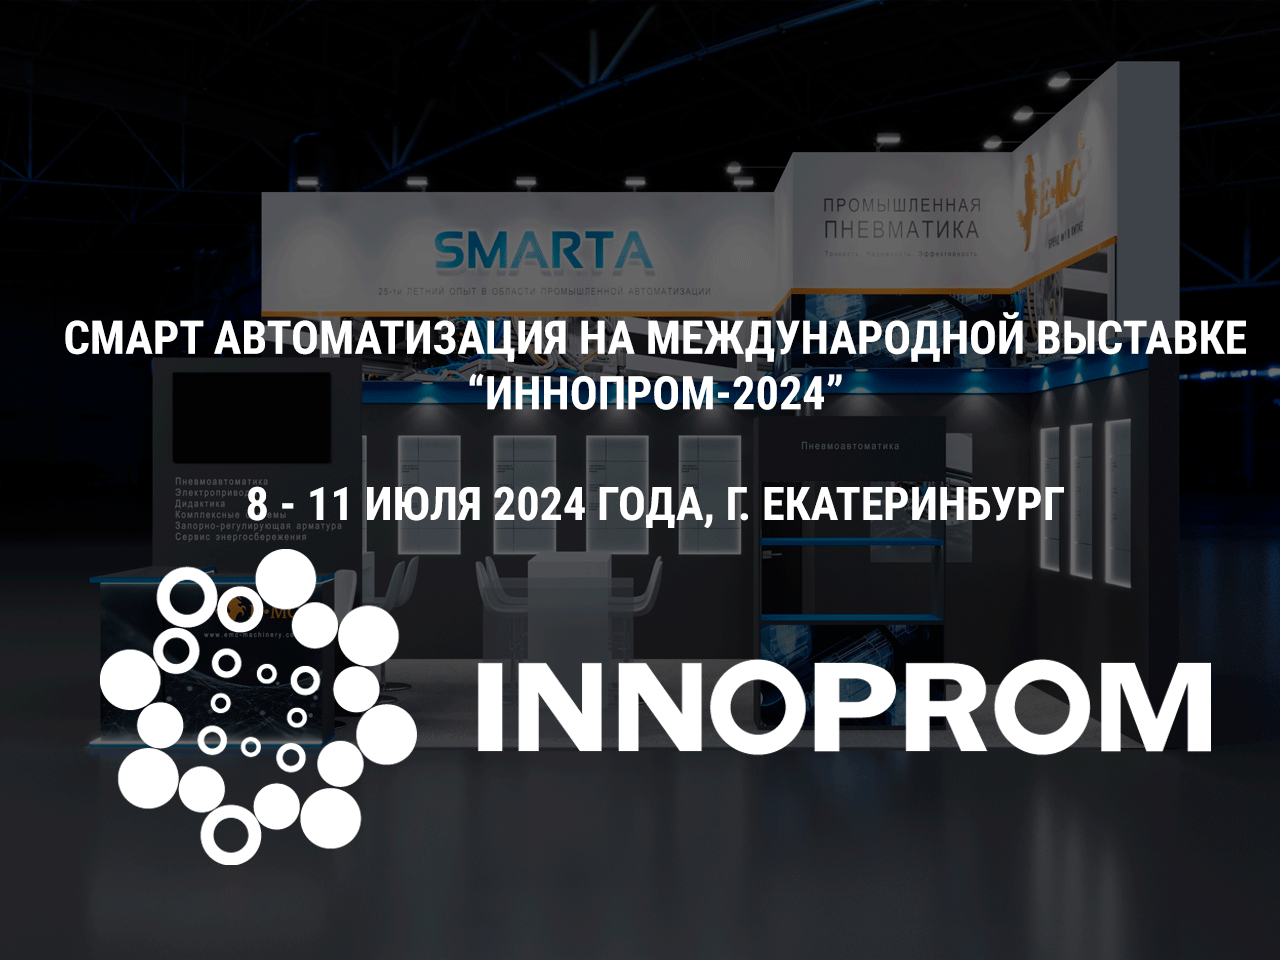 Приглашаем вас посетить наш стенд на выставке ИННОПРОМ-2024